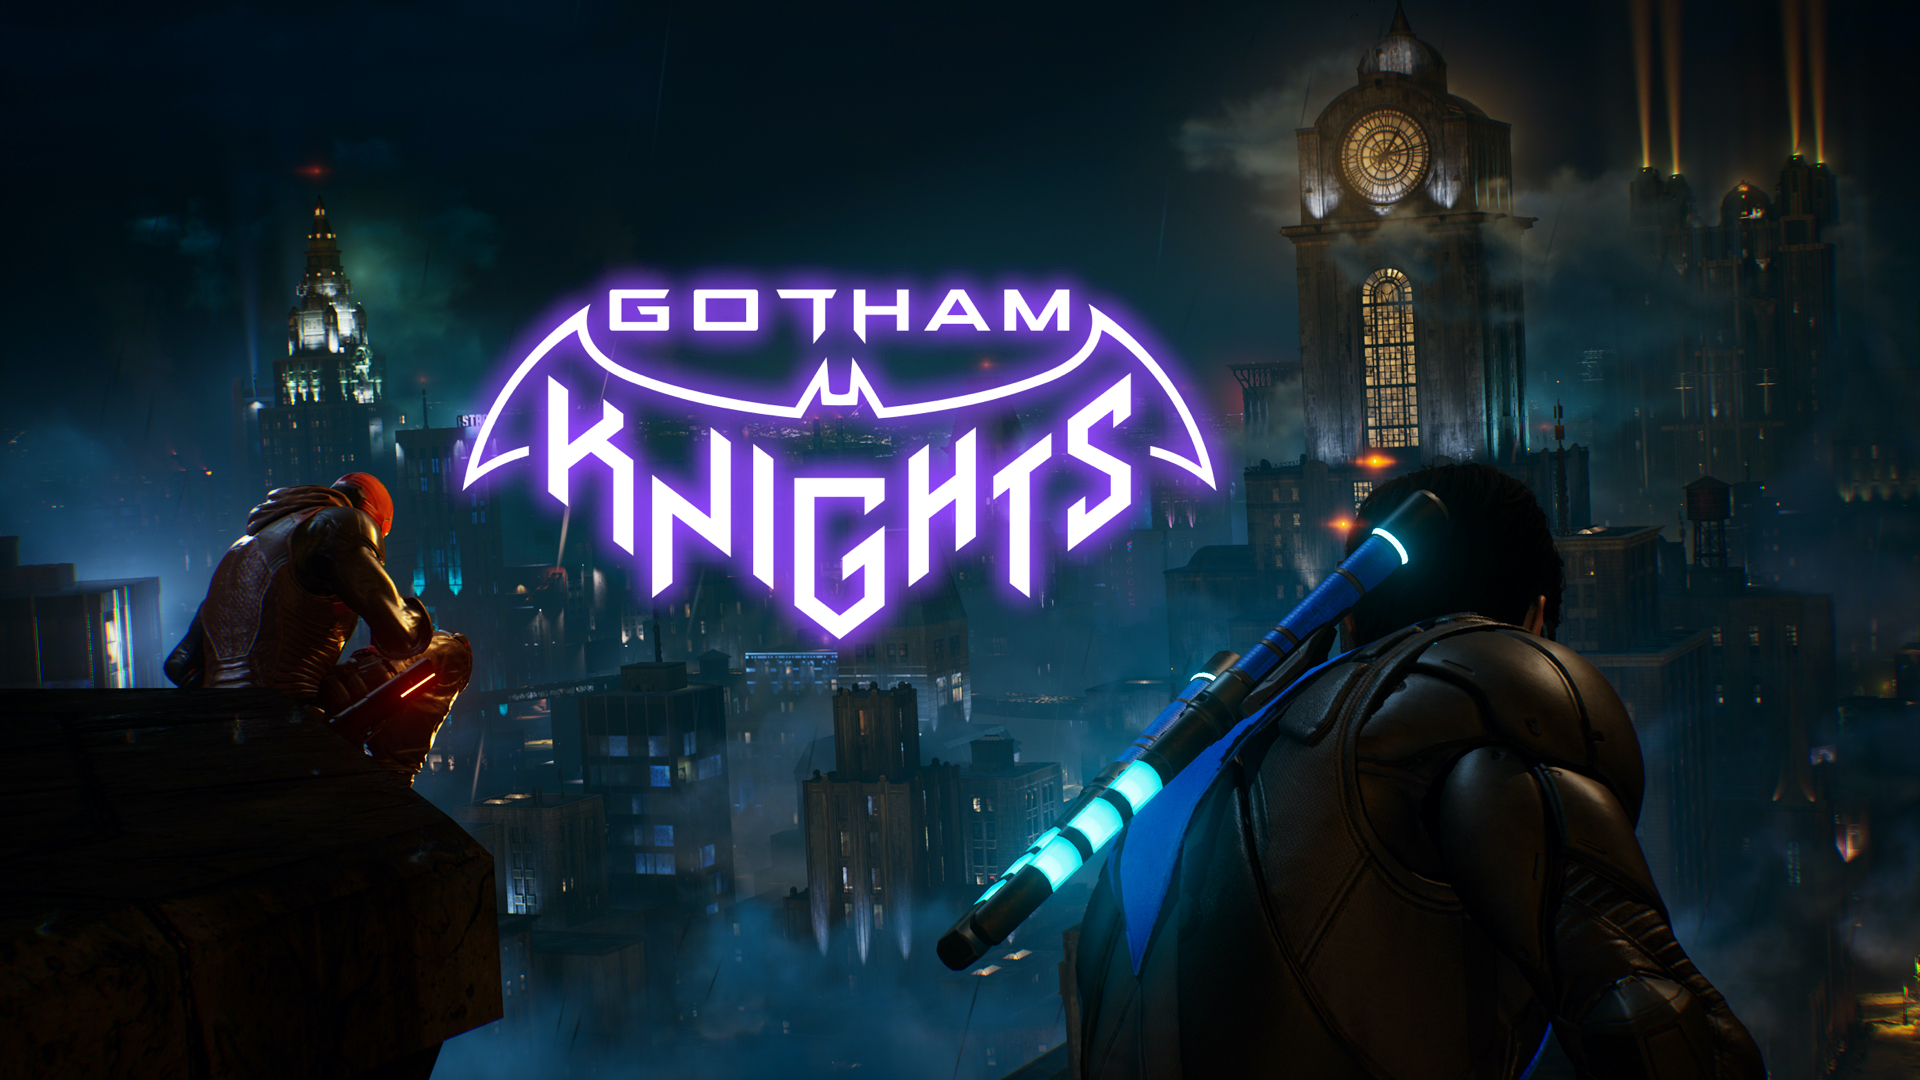 Gotham Knights - бул жандуу кызмат оюну эмес, өз алдынча баян, дейт Иштеп чыгуучу